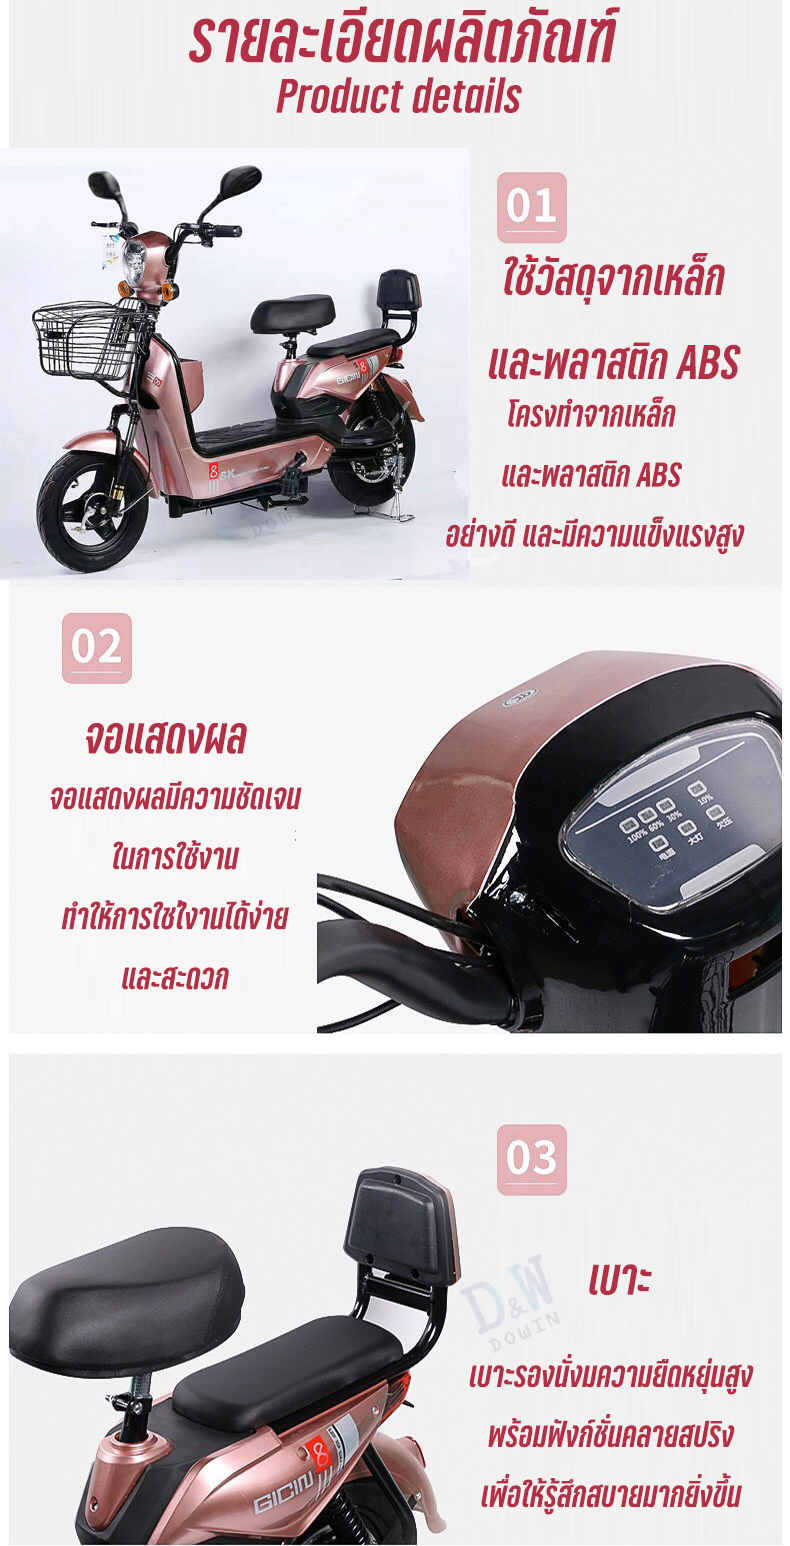 (รุ่นอัพเกรด) Electric Bicycle จักรยานไฟฟ้า 48v รถไฟฟ้าผู้ใหญ่ รถจักรยานไฟฟ้า จักรยานไฟฟ้าผู้ใหญ่ ไฟ LED ไฟเลี้ยว หน้า-หลัง พร้อมกระจกมองหลัง